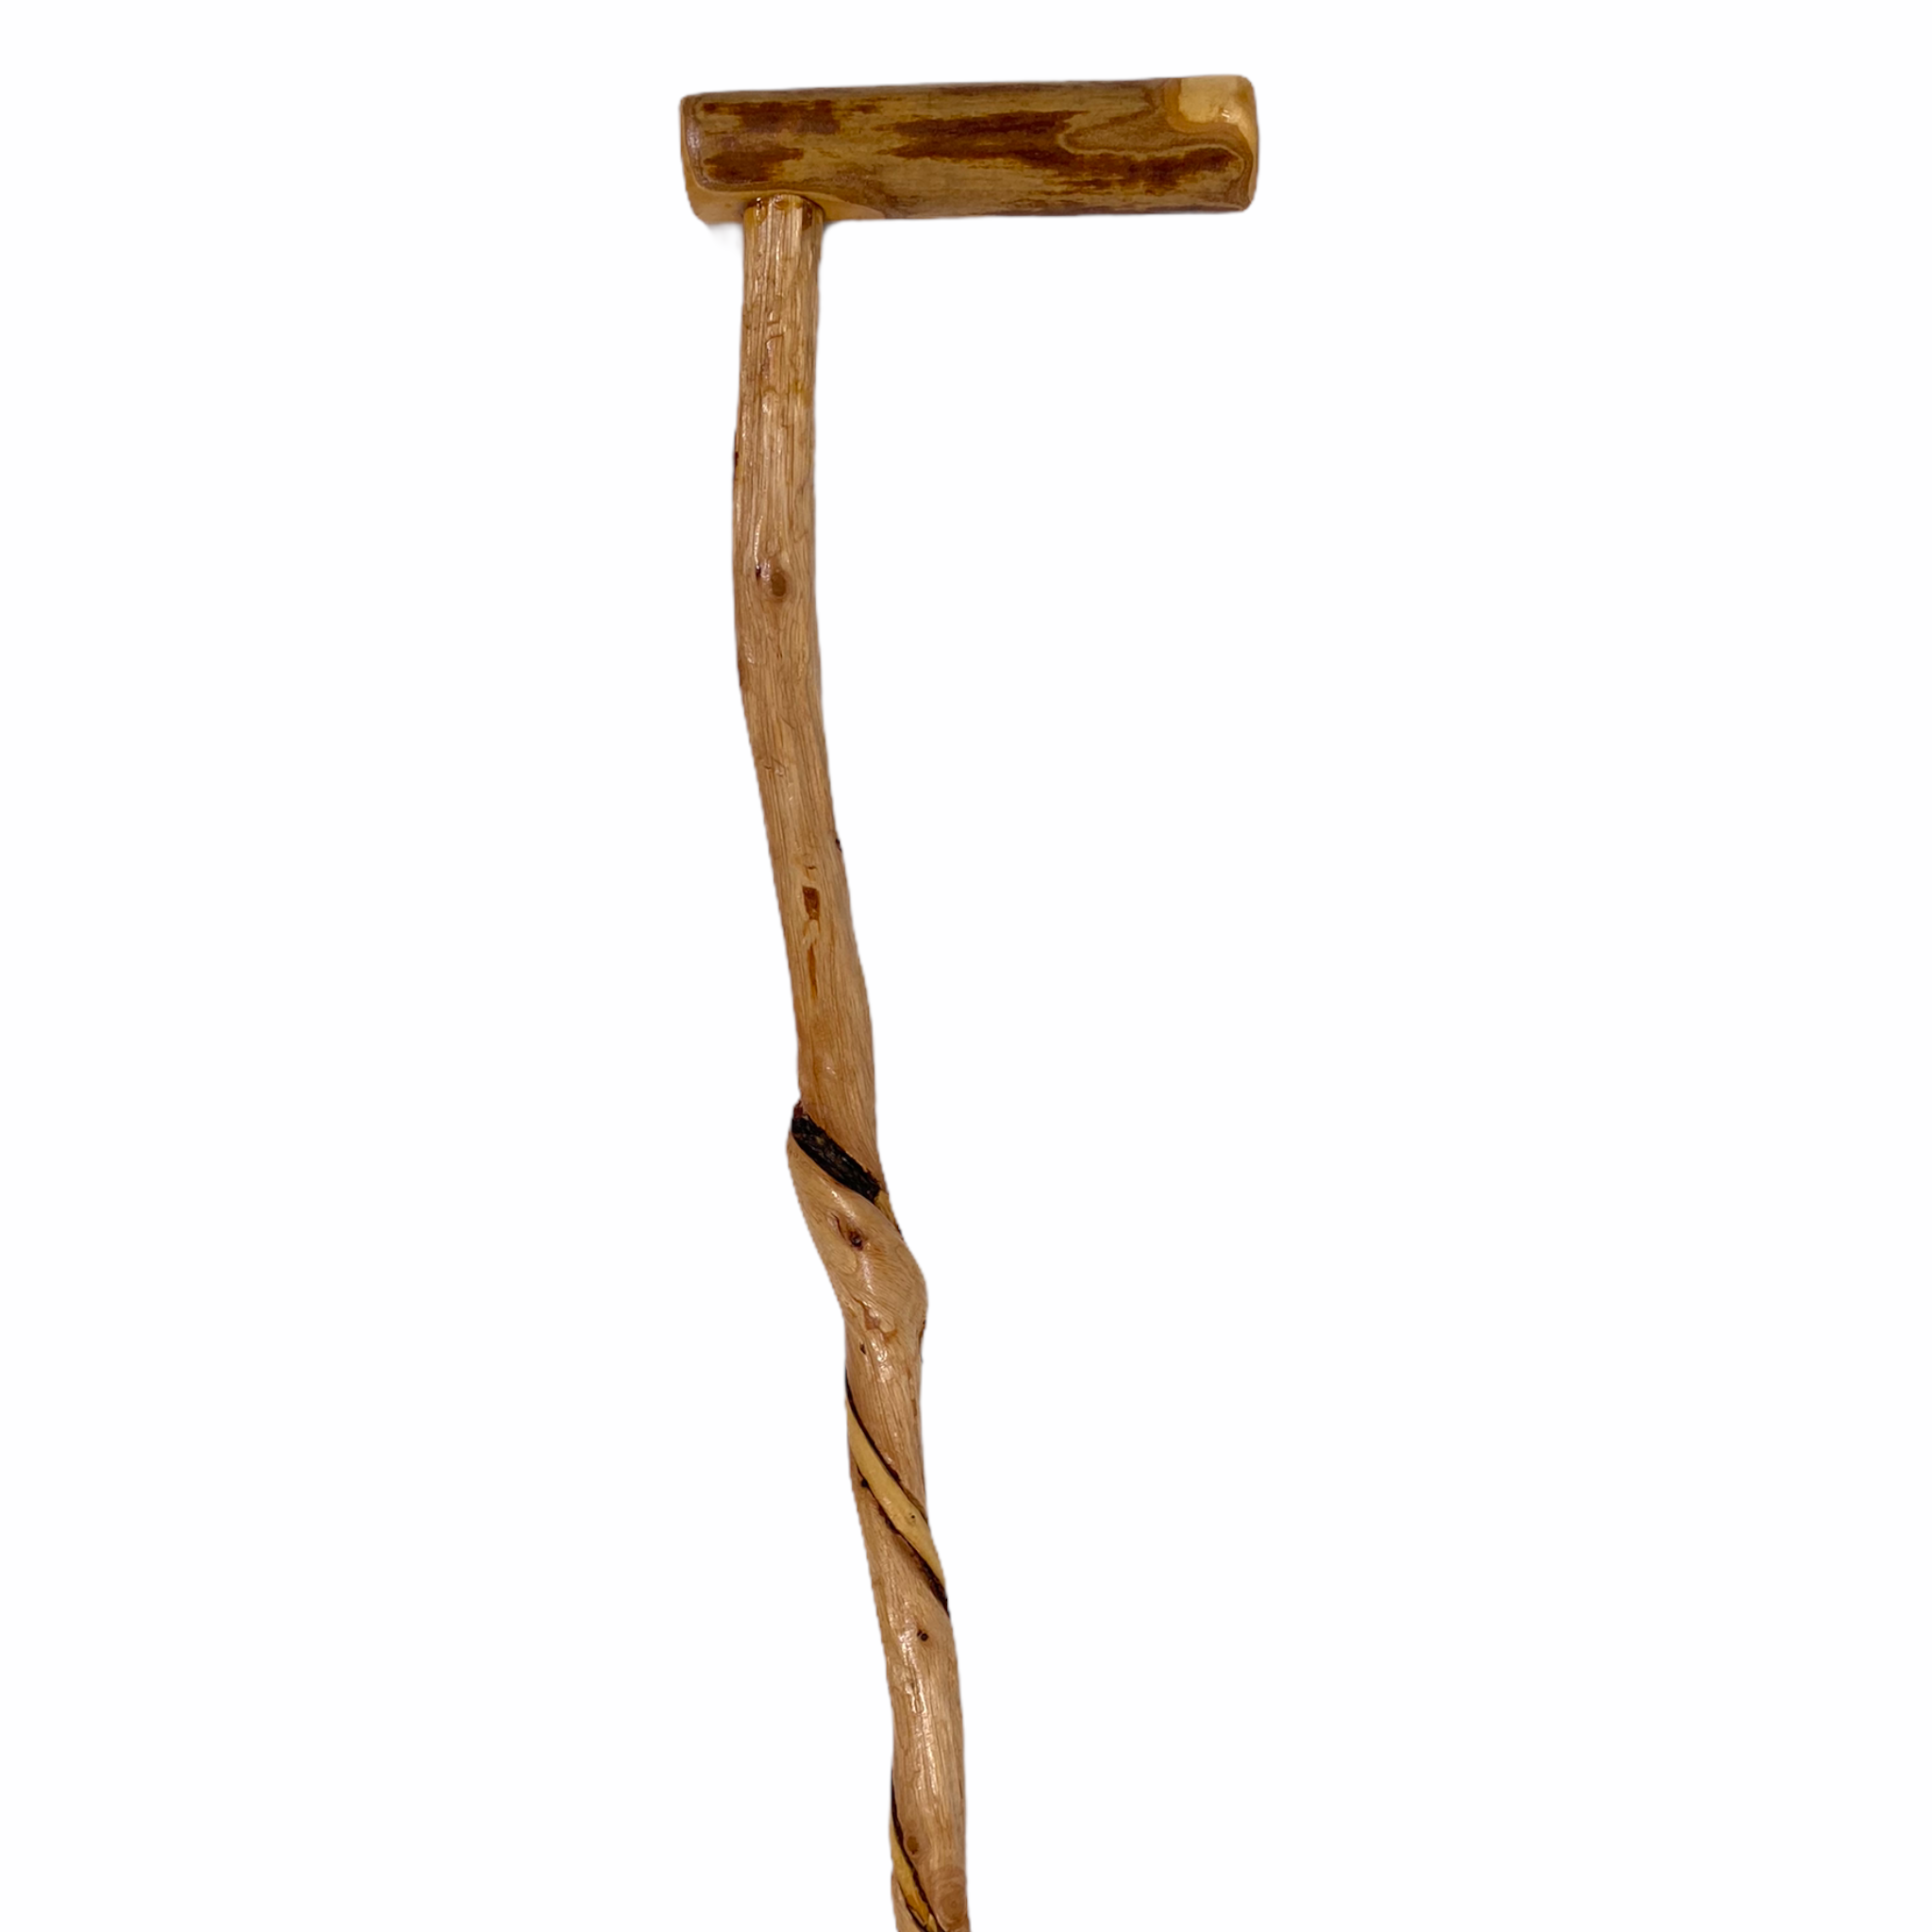 Get Natural Spiral Vine Twisted Wood Walking Cane - 36.5 Online